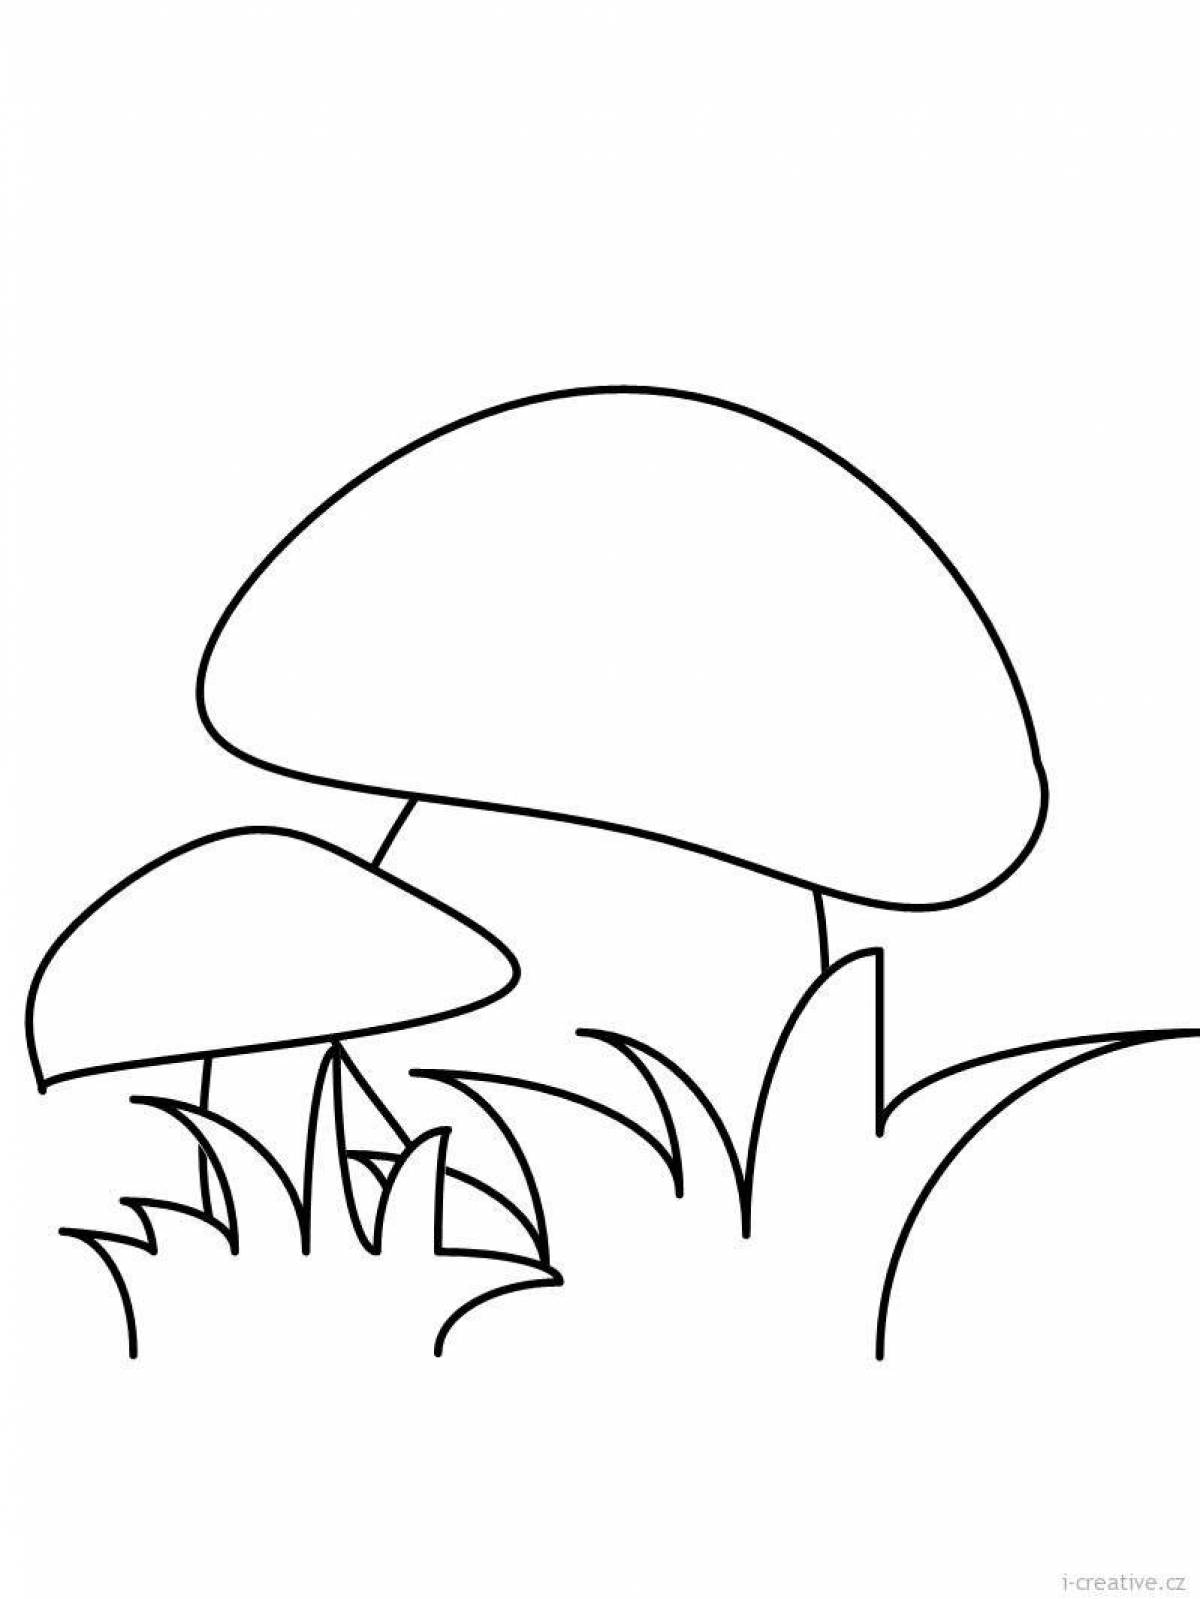 Coloring exotic mushrooms